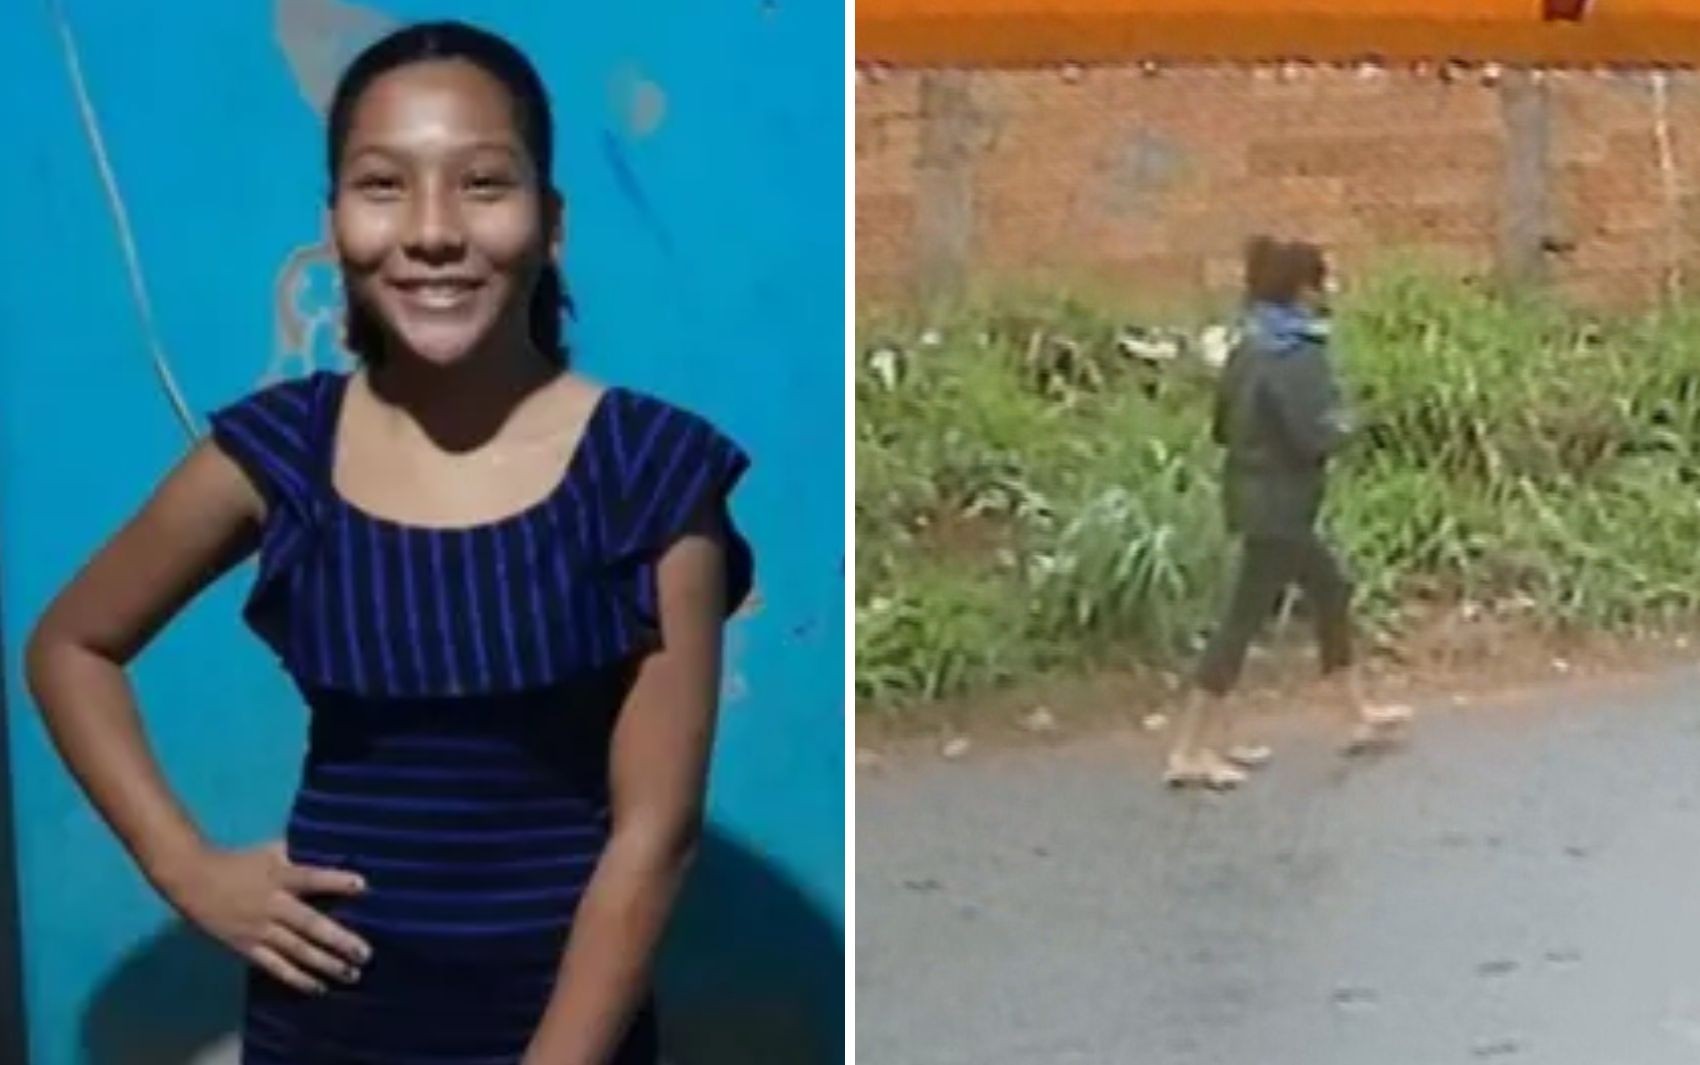 Caso Amélia Vitória: Enteada de suspeito de matar estudante de 14 anos denunciou à polícia que foi estuprada cinco vezes por ele